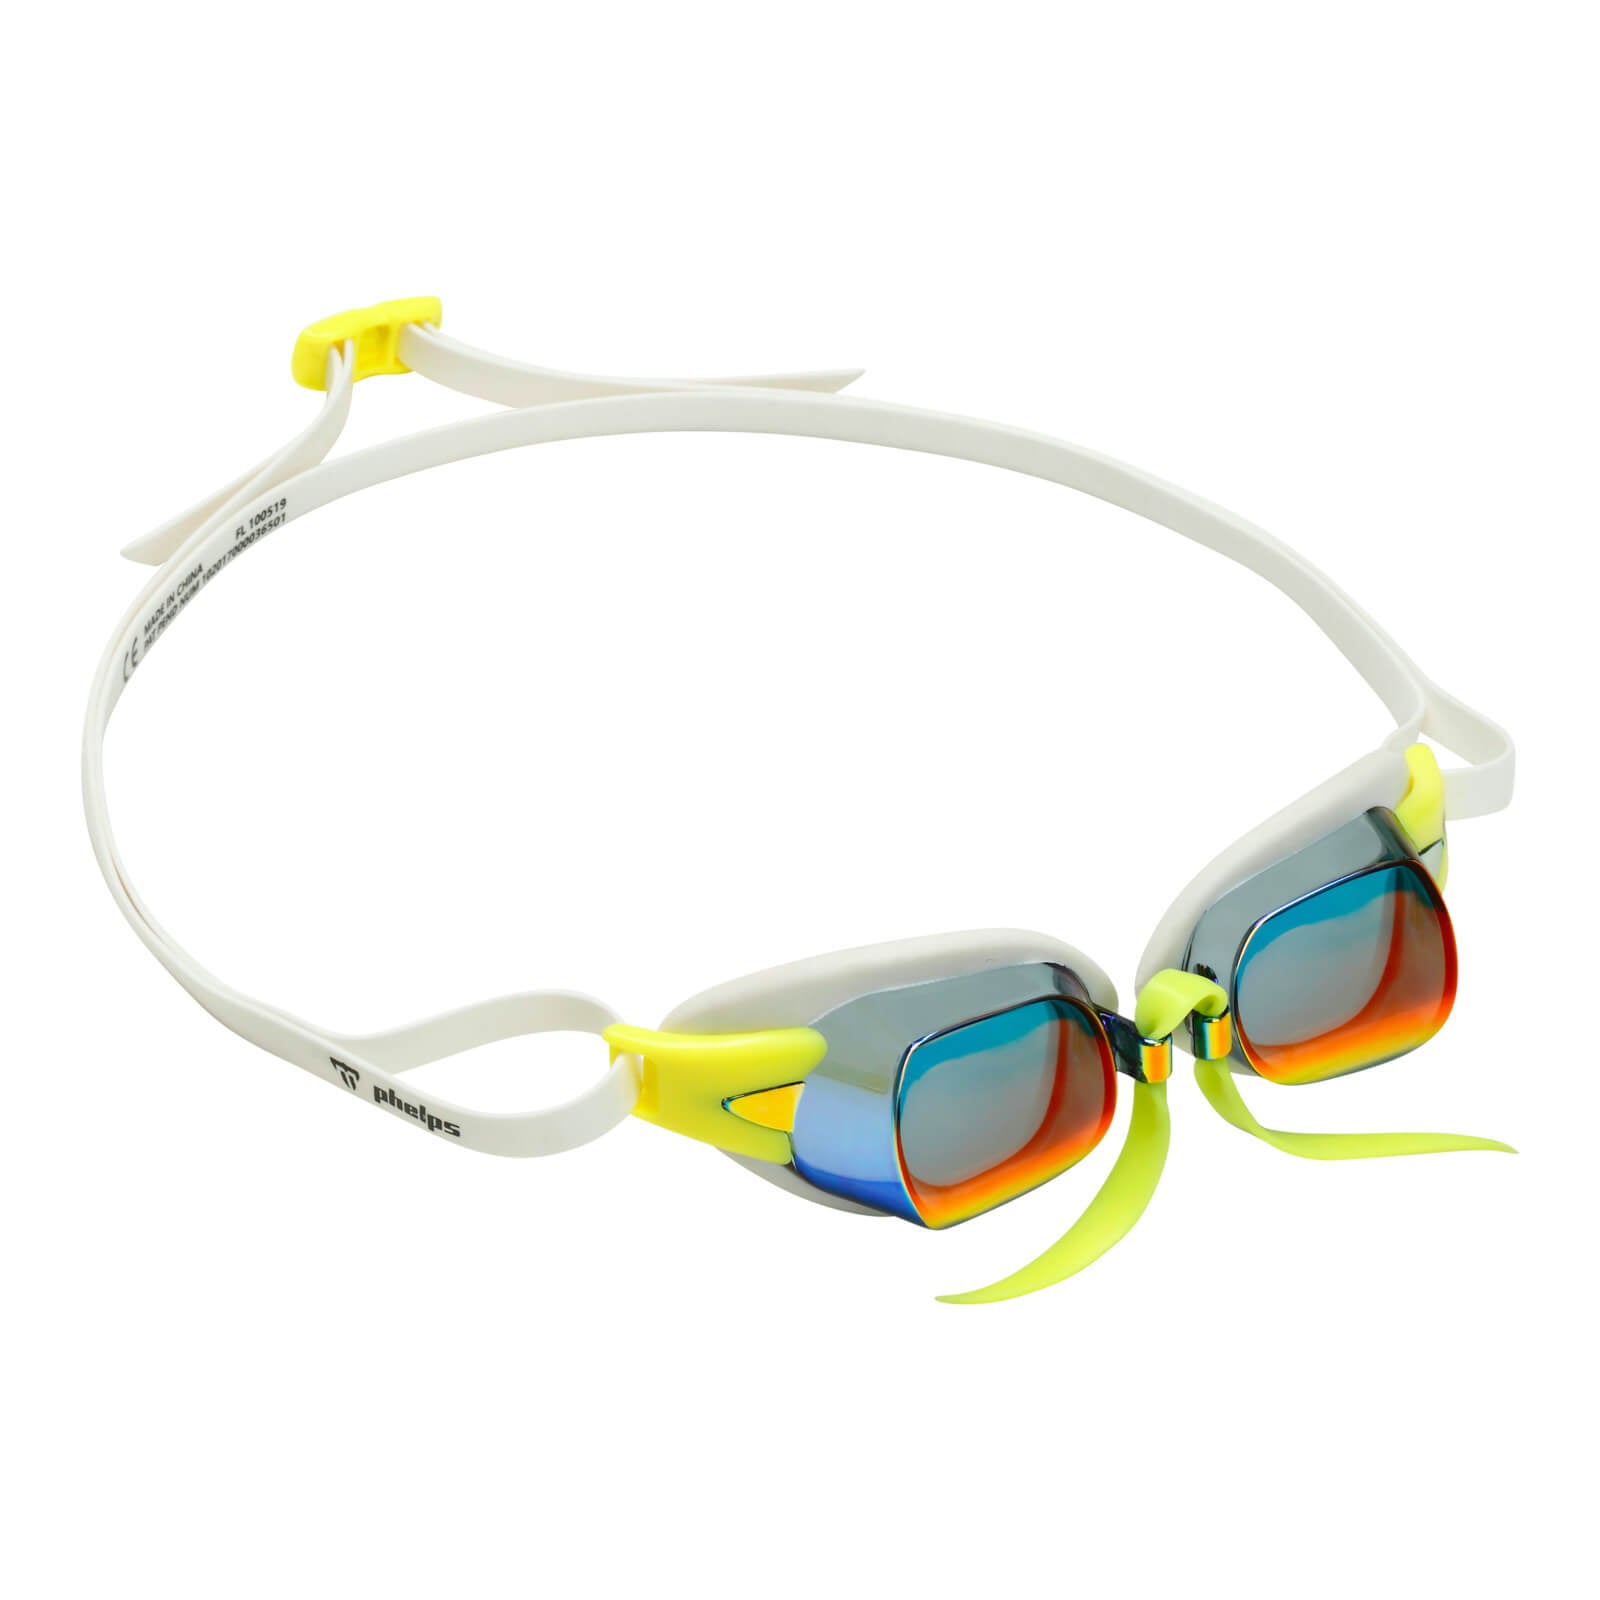 Phelps Chronos Men's Swimming Goggles White/Yellow Mirror Red